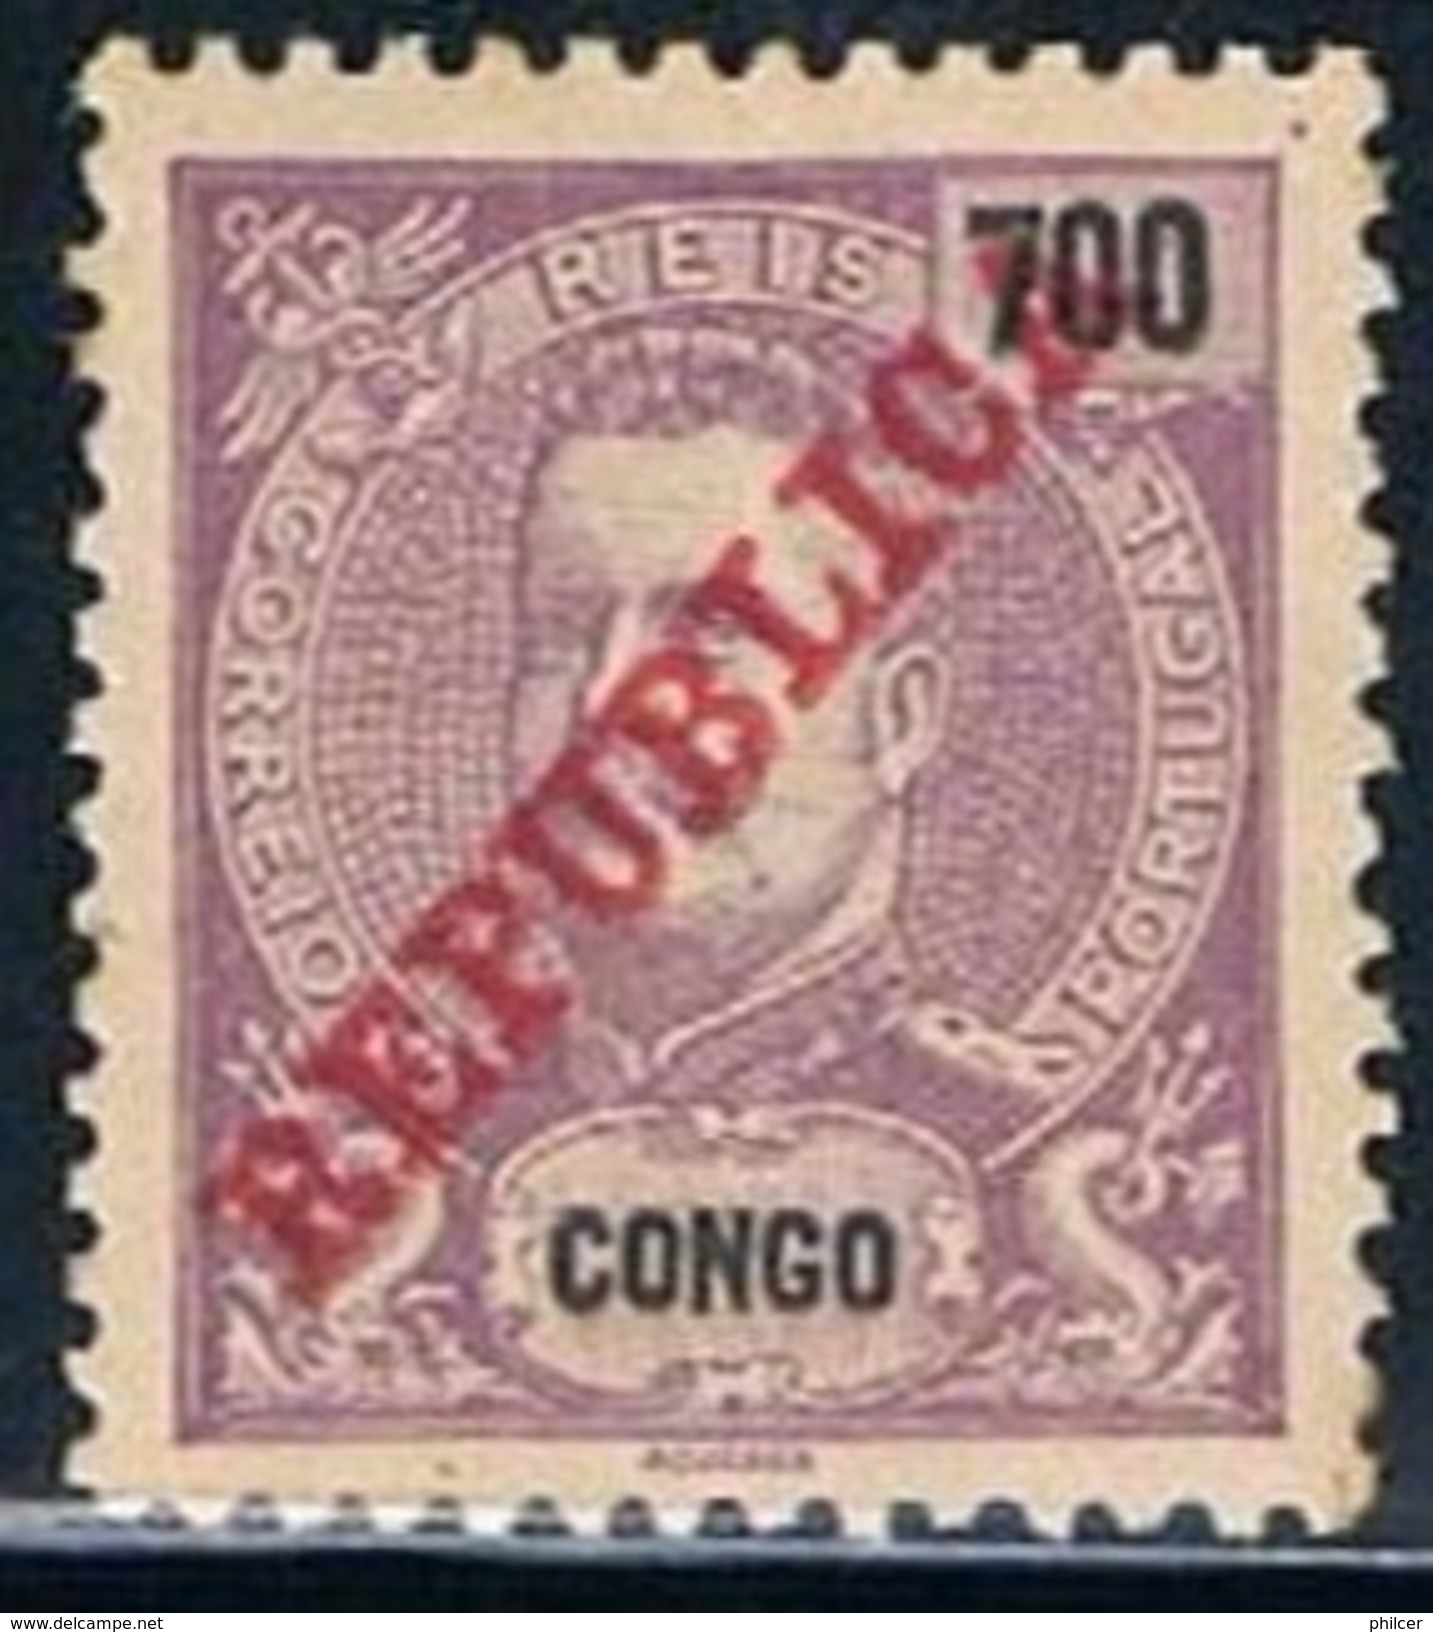 Congo, 1911, # 74, MH - Portuguese Congo